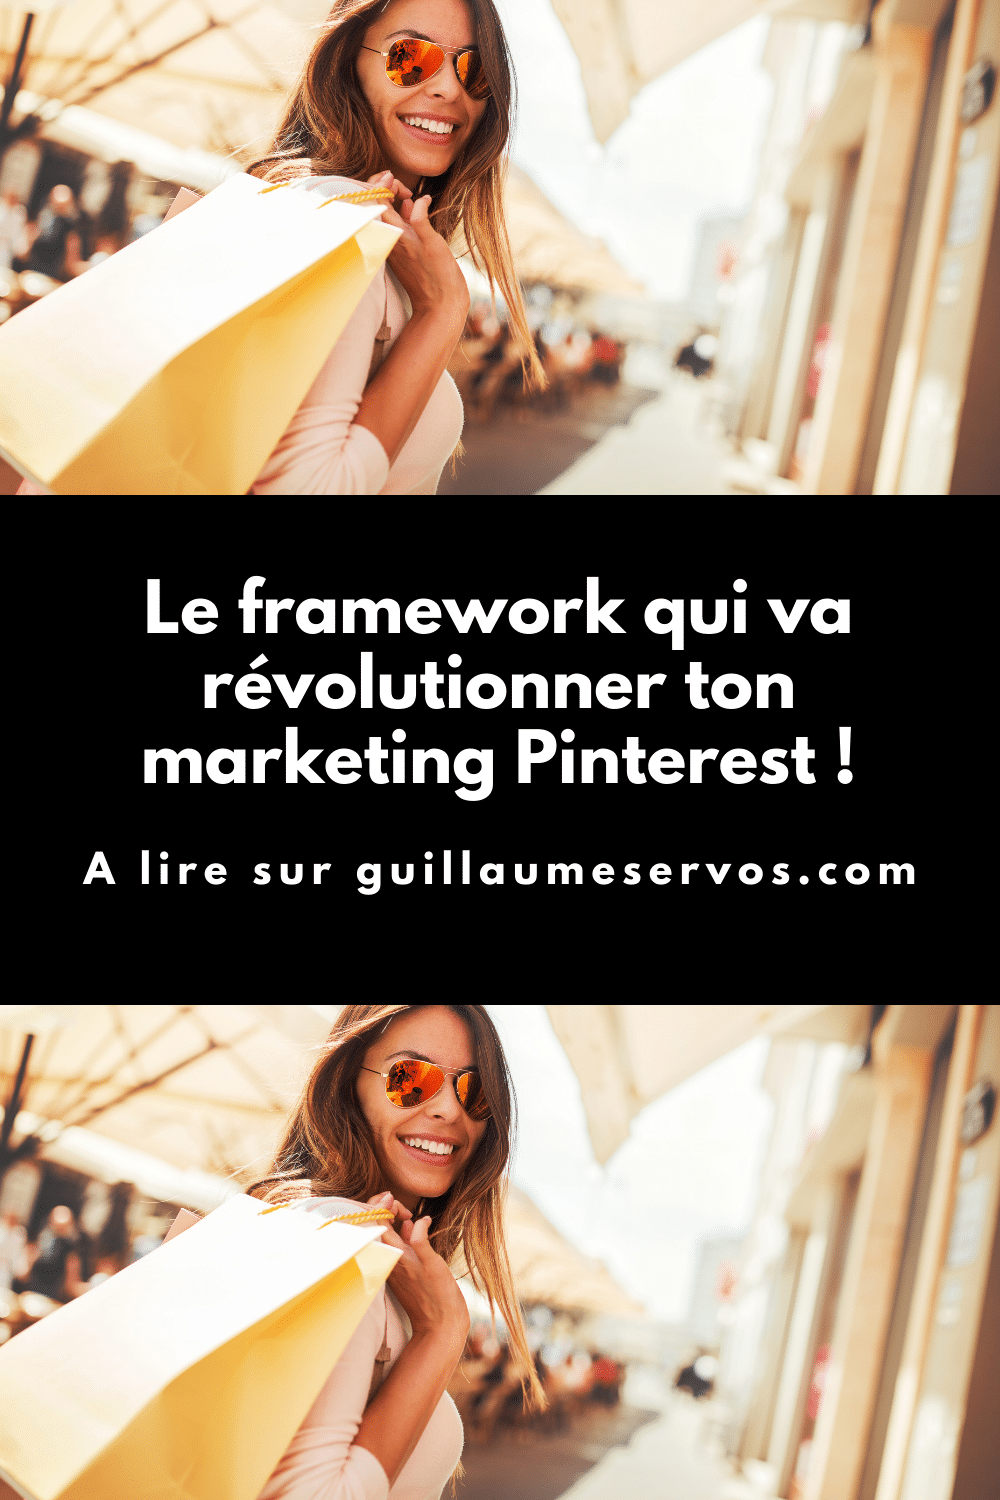 Tu cherches un framework pour faire décoller ton marketing Pinterest ? Au menu : inspirer, informer et décder.